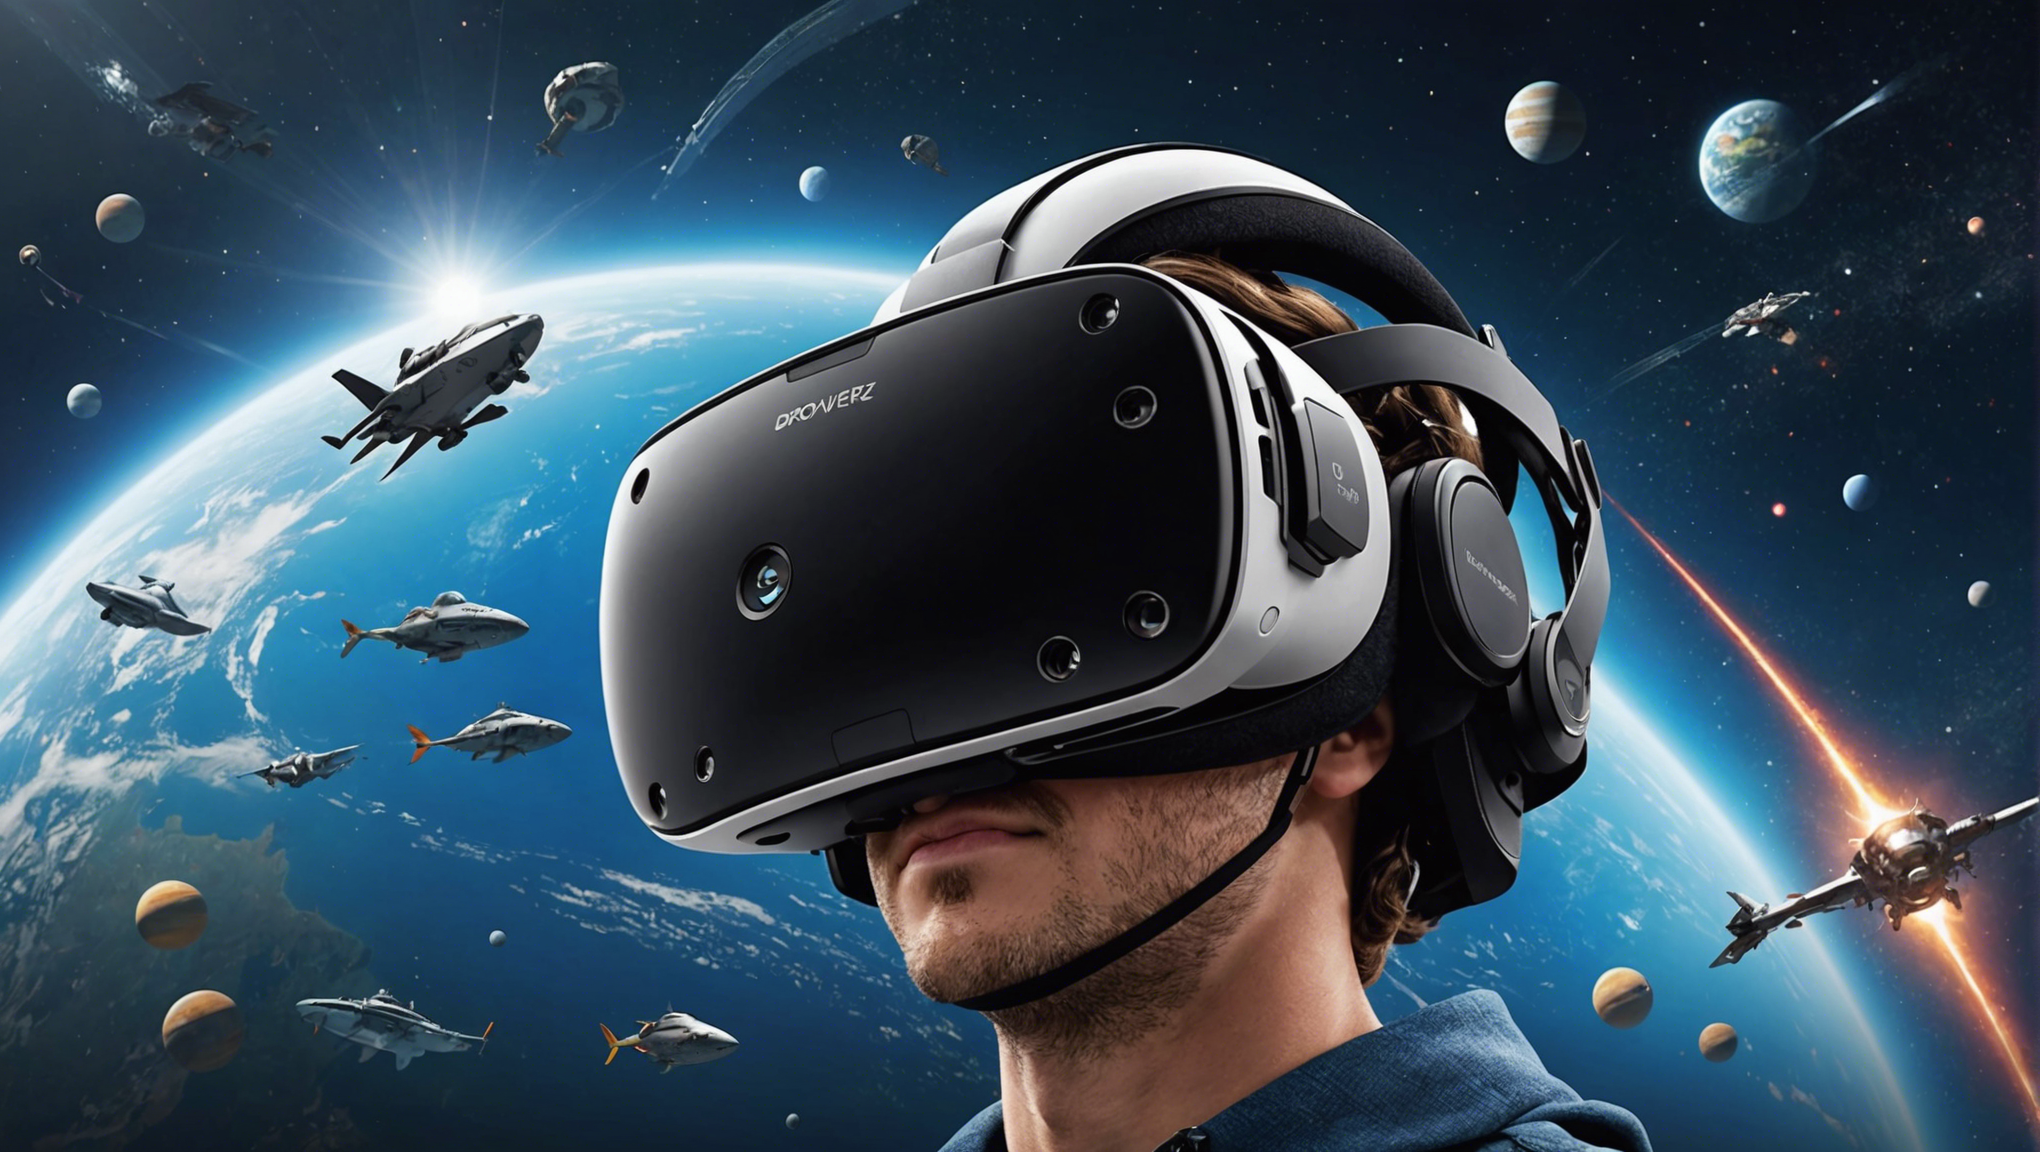 découvrez le casque vr : plongez dans un univers virtuel réaliste ! profitez d'une expérience immersive inédite avec notre casque de réalité virtuelle. plongez au cœur d'un univers captivant et explorez des mondes virtuels ultra-réalistes.